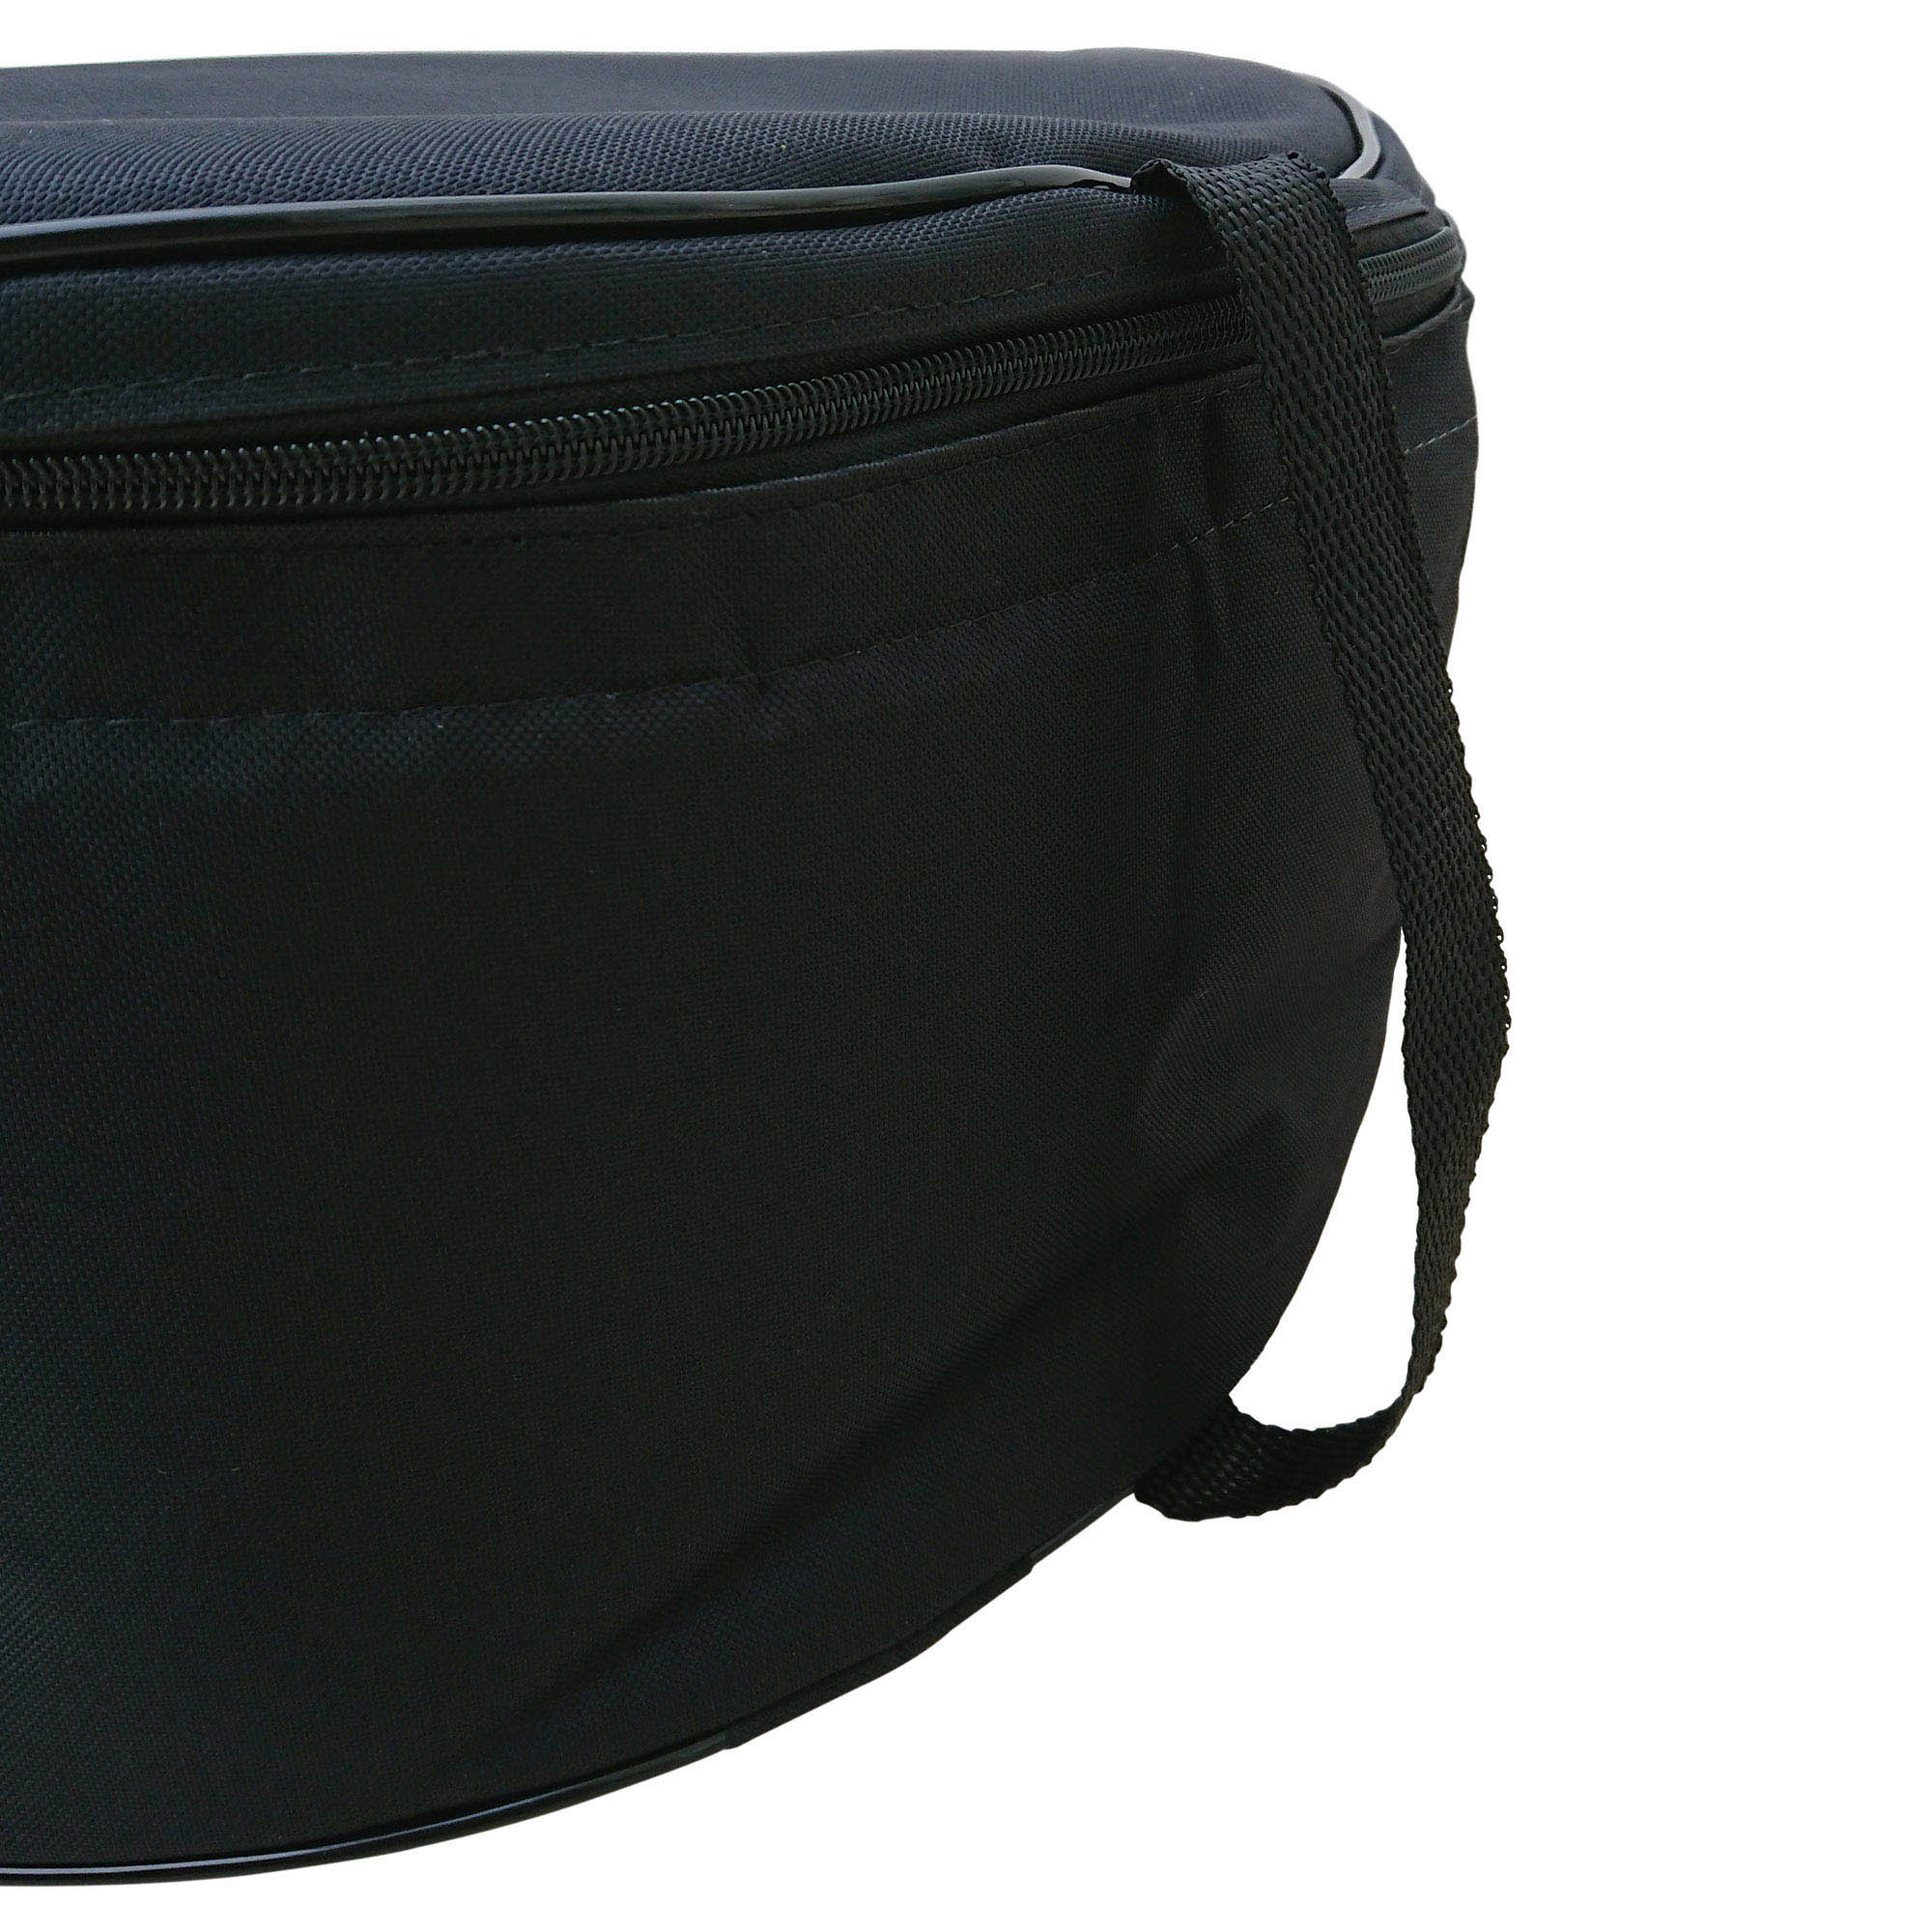 Capa Bag Extra Luxo para Caixa De Bateria 14" x 12cm CLAVE & BAG. Totalmente acolchoado